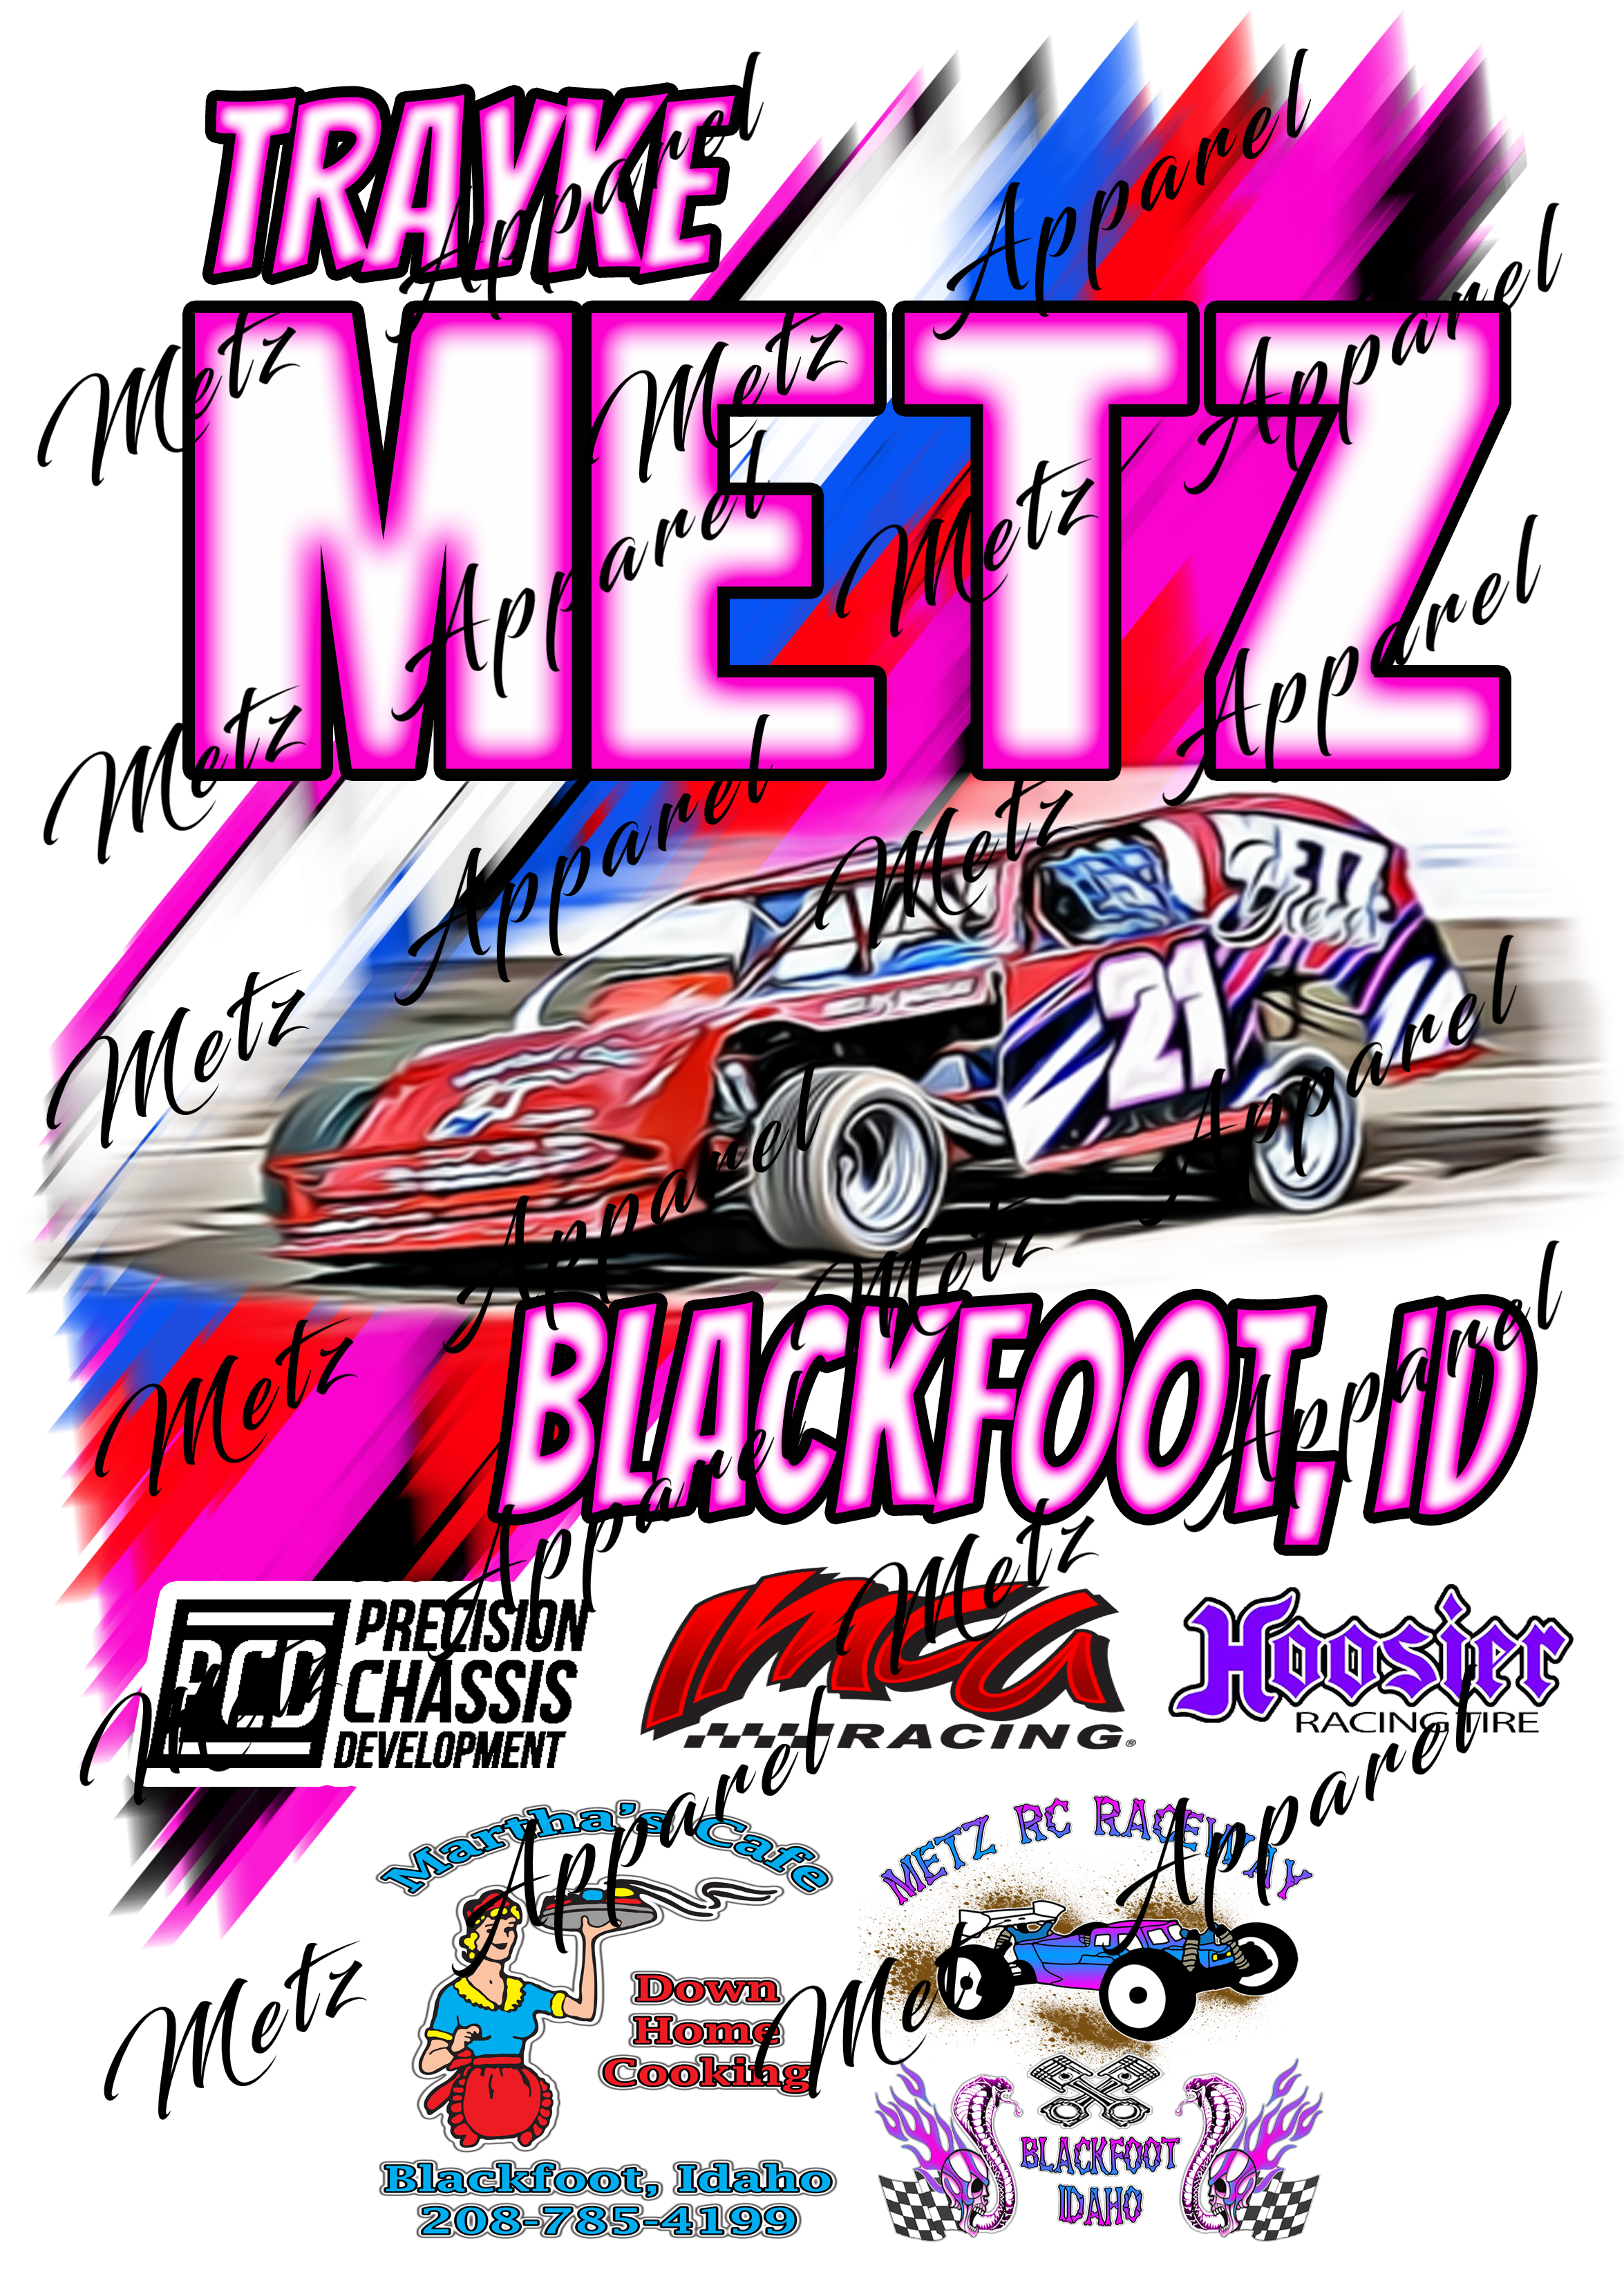 Metz Racing